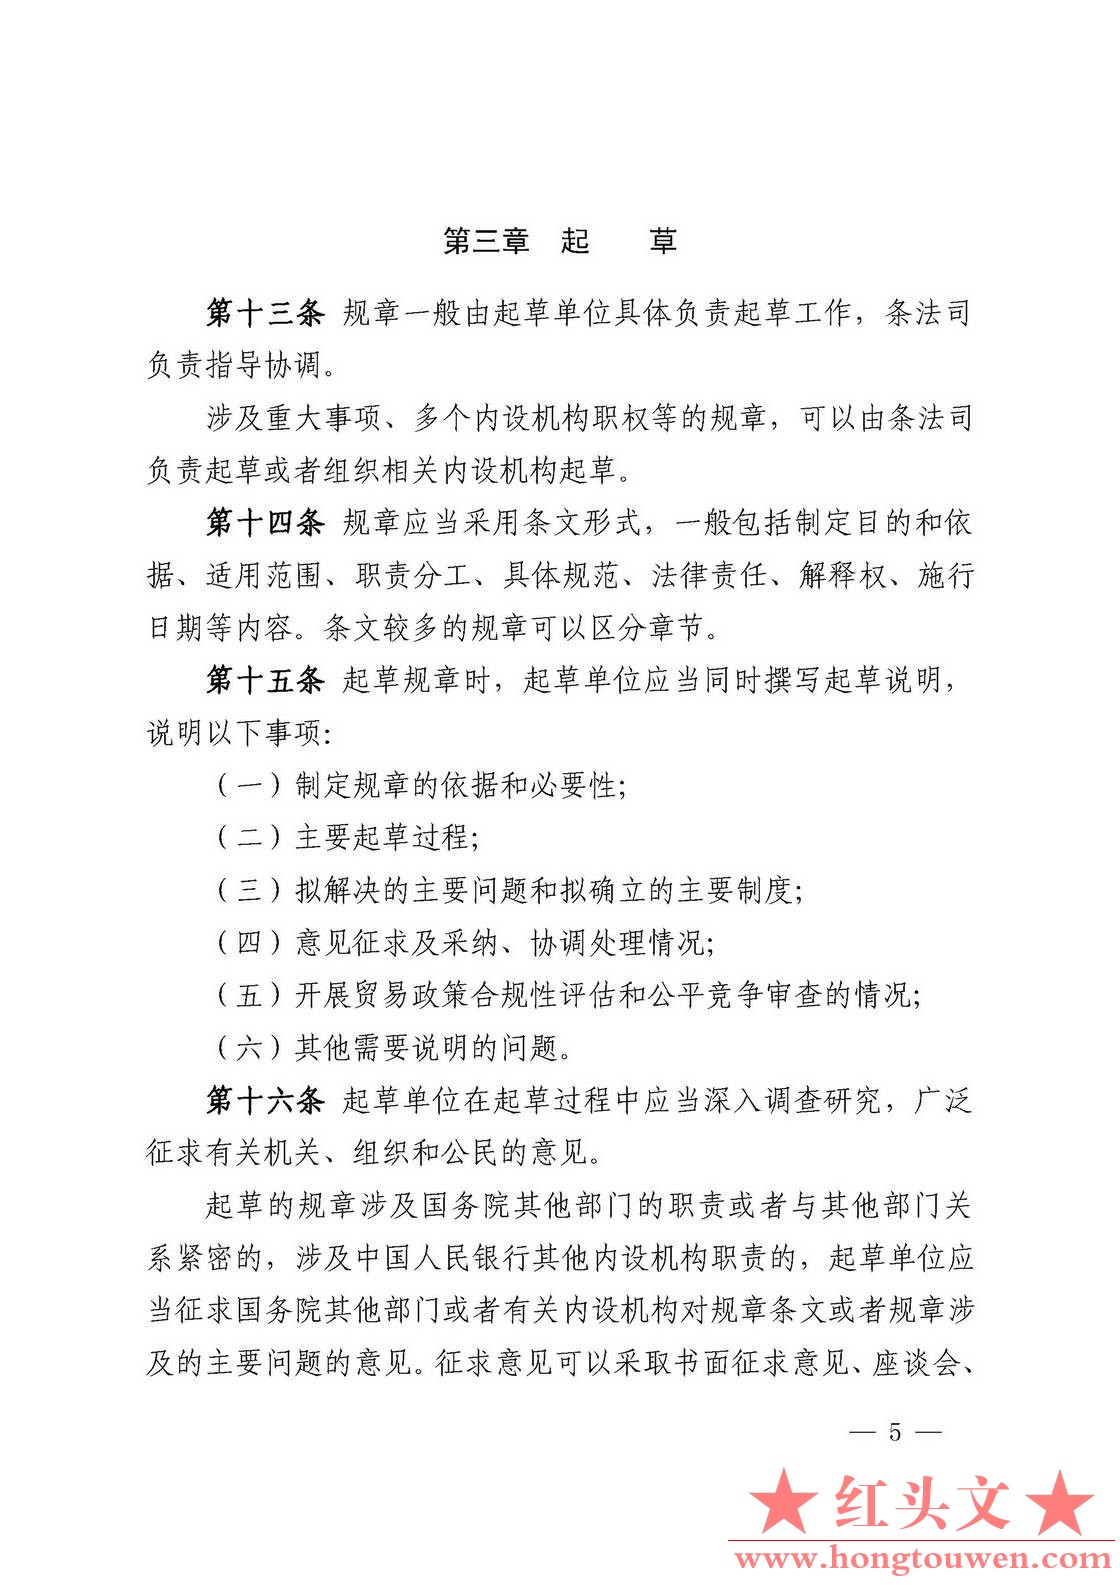 中国人民银行令[2018]3号-中国人民银行规章制定程序与管理规定_页面_05.jpg.jpg